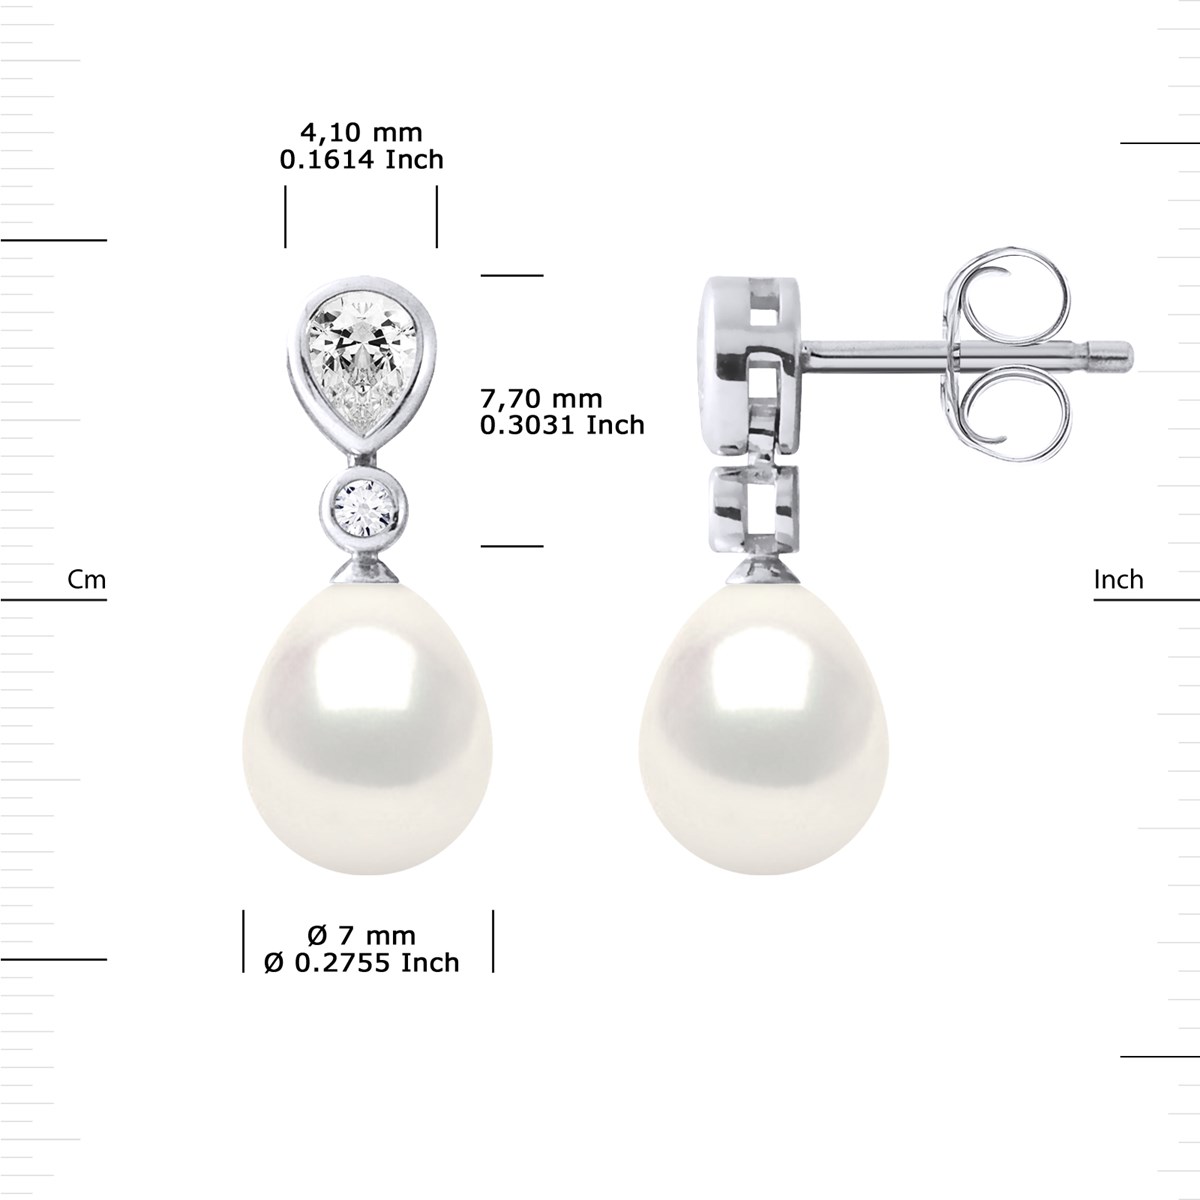 Pendants d'Oreilles Joaillerie Perles d'Eau Douce Poires 7-8 mm Blanches Argent 925 - vue 3